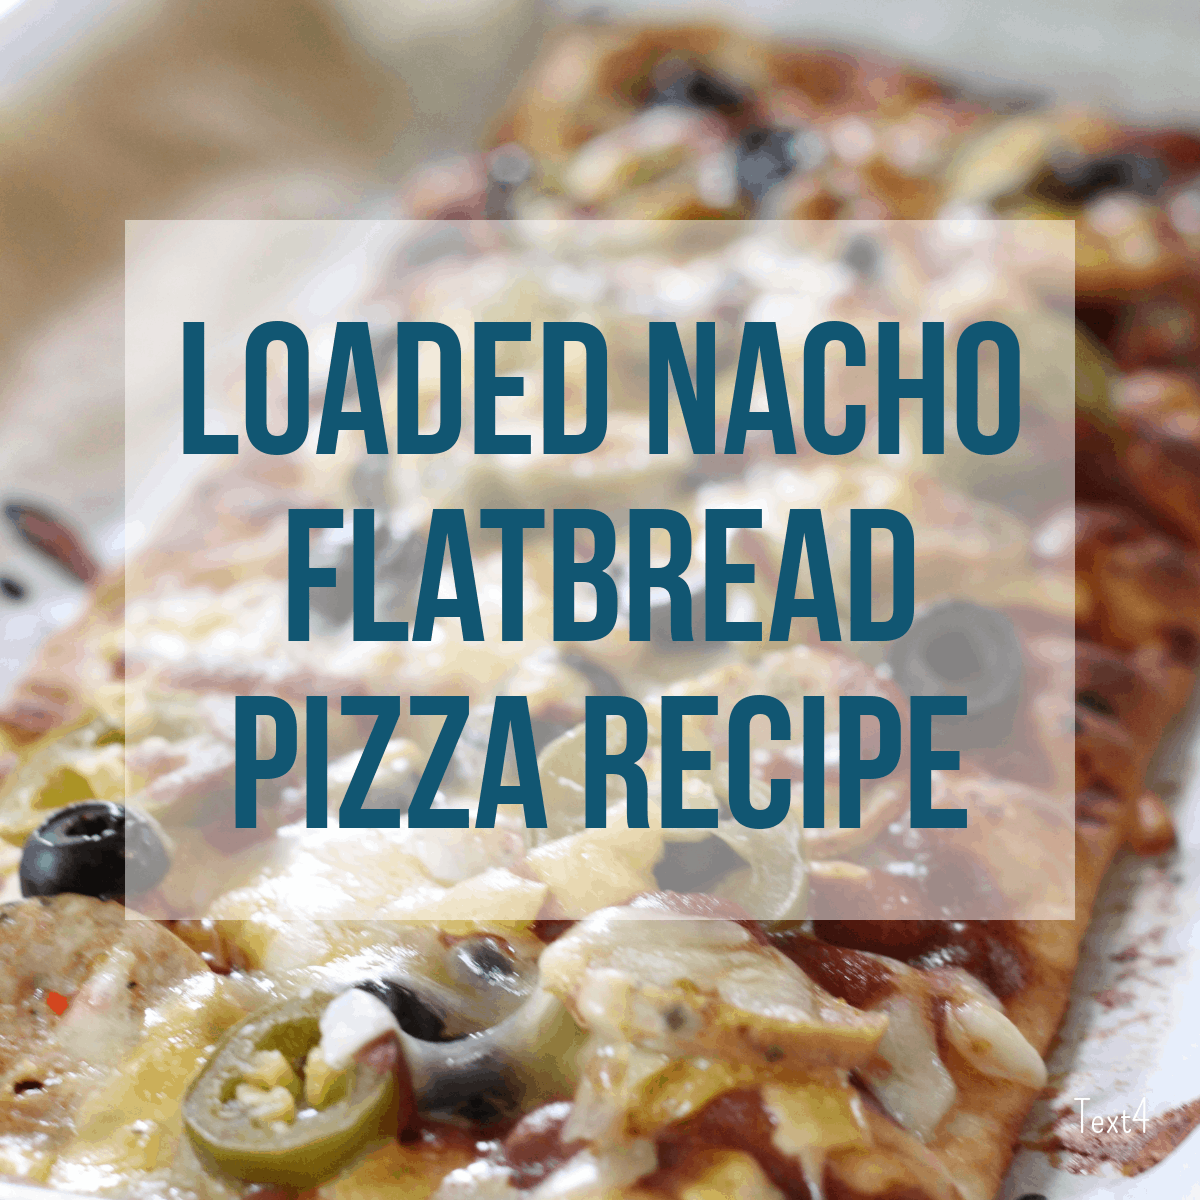 Loaded Nacho Flatbread Pizza Recipe for Summer!